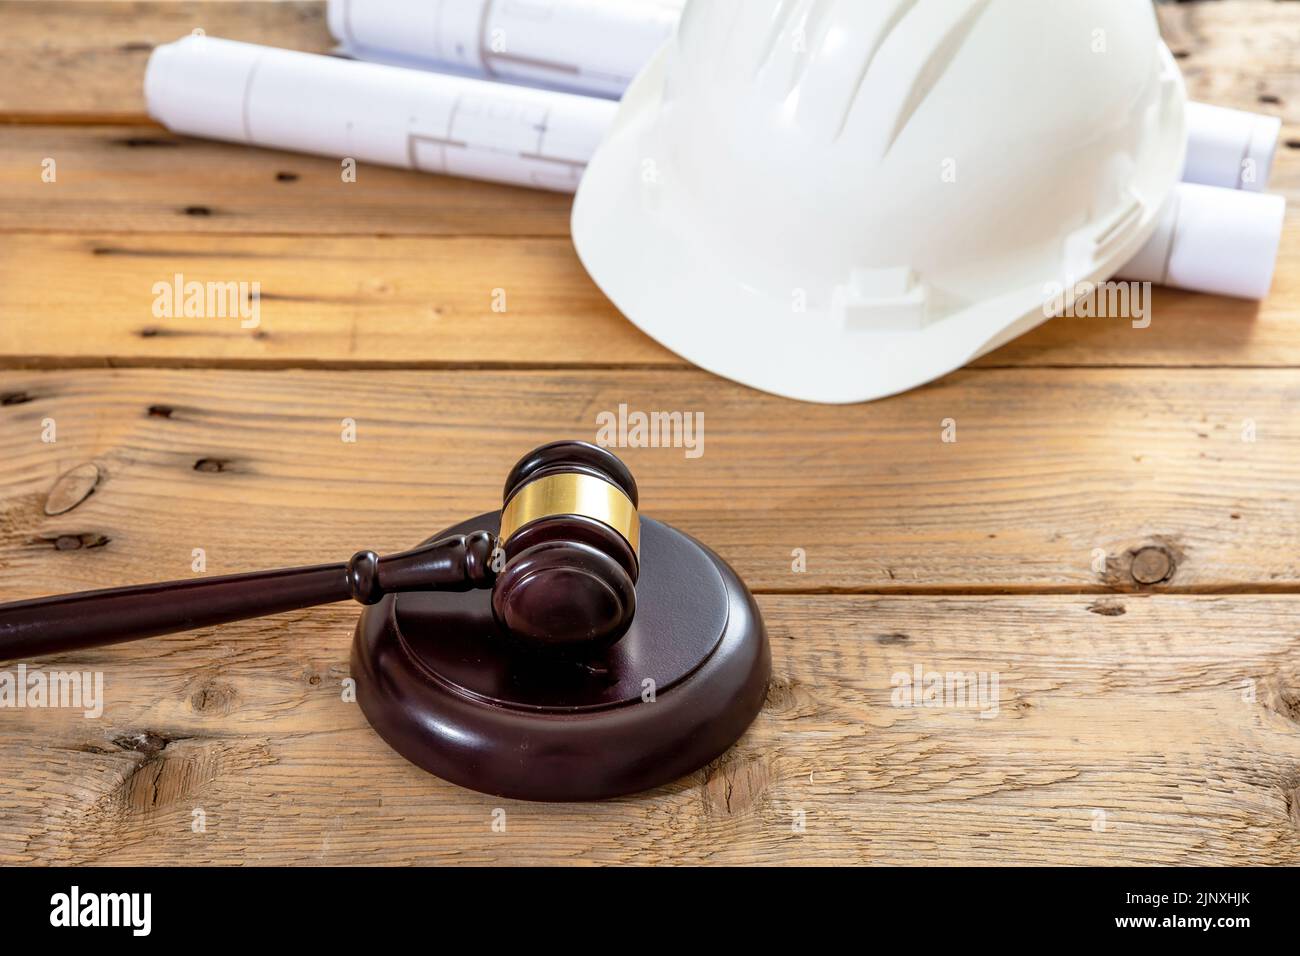 Construcción, Derecho laboral. El casco de seguridad del ingeniero de color blanco, el martillo del juez y los planos de construcción sobre una mesa de madera Foto de stock